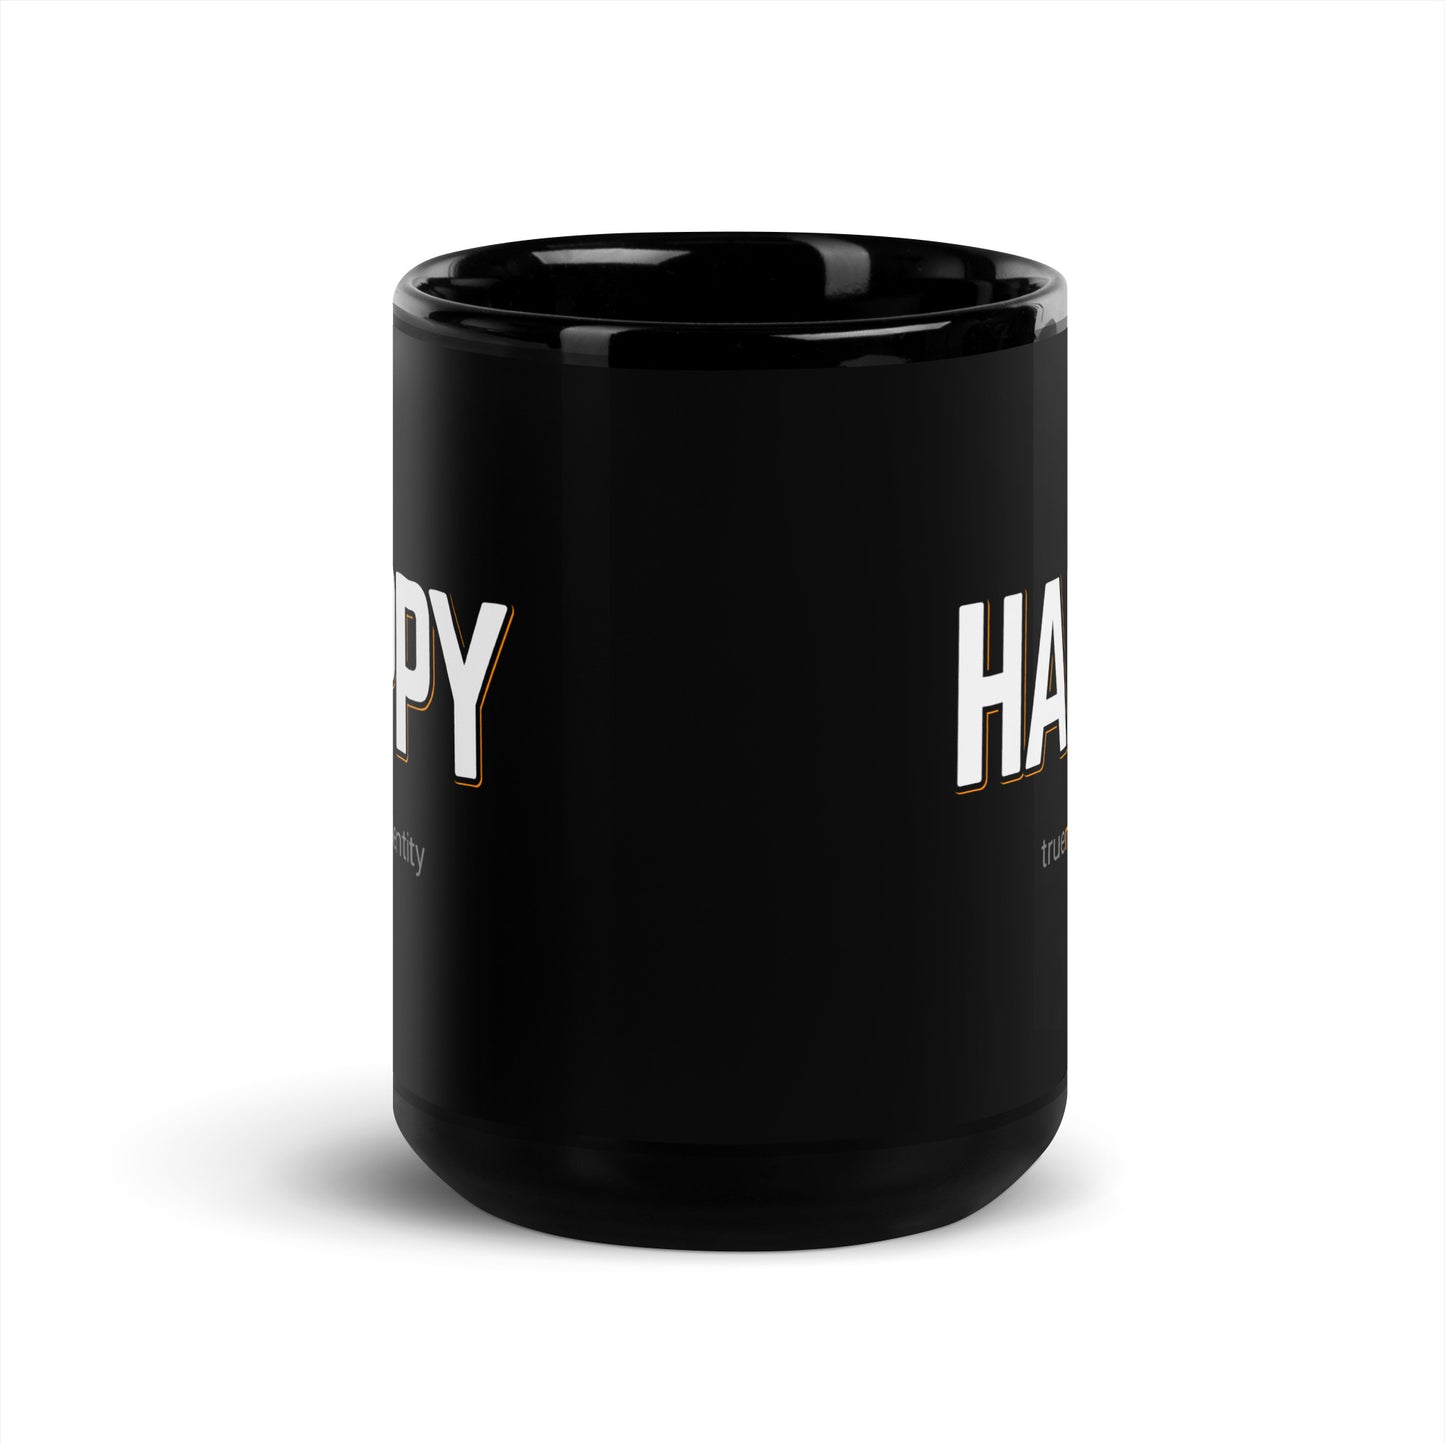 HAPPY Black Coffee Mug Bold 11 oz or 15 oz